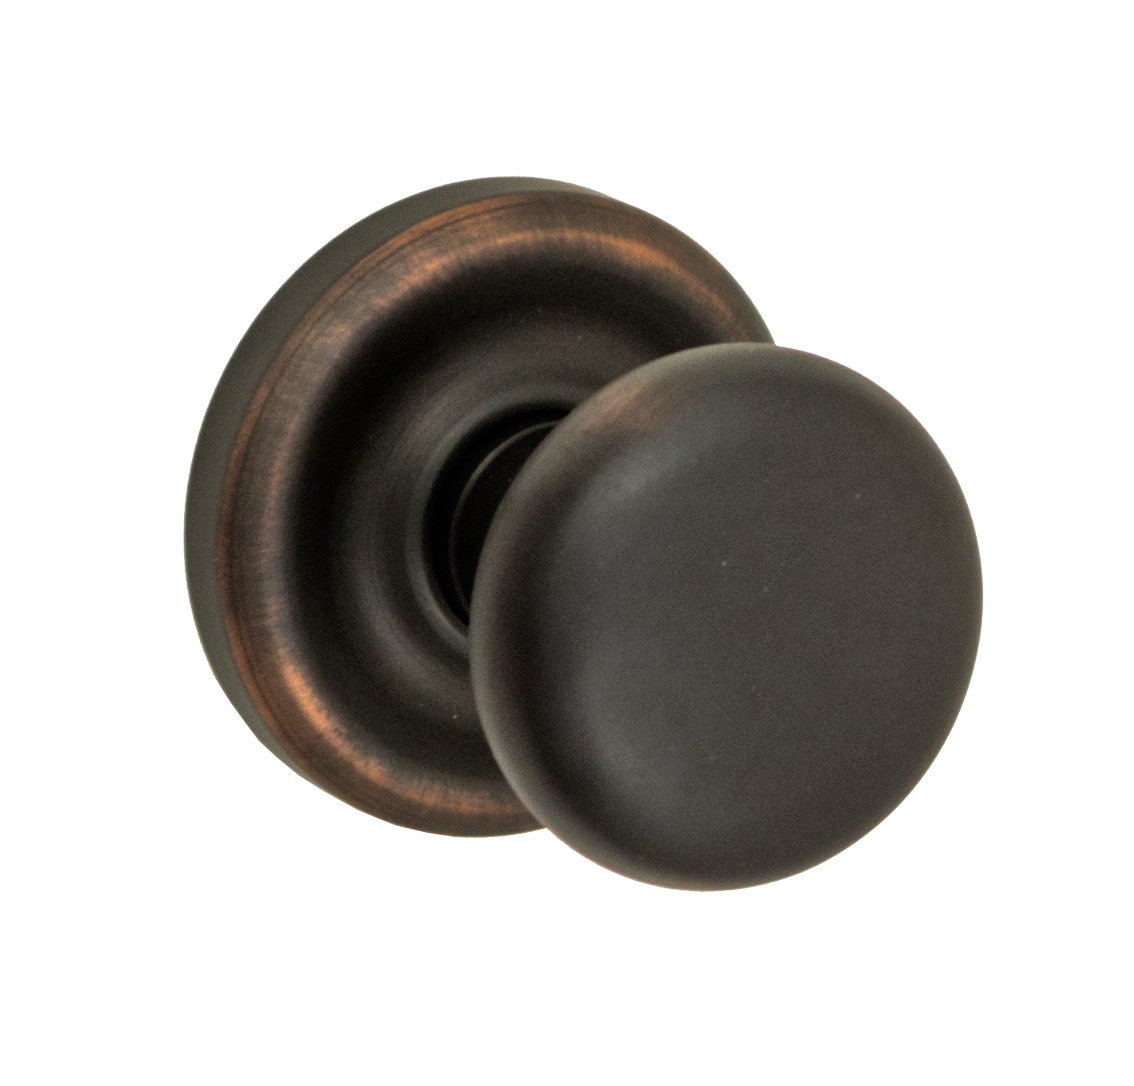 oil bronze door knobs photo - 15